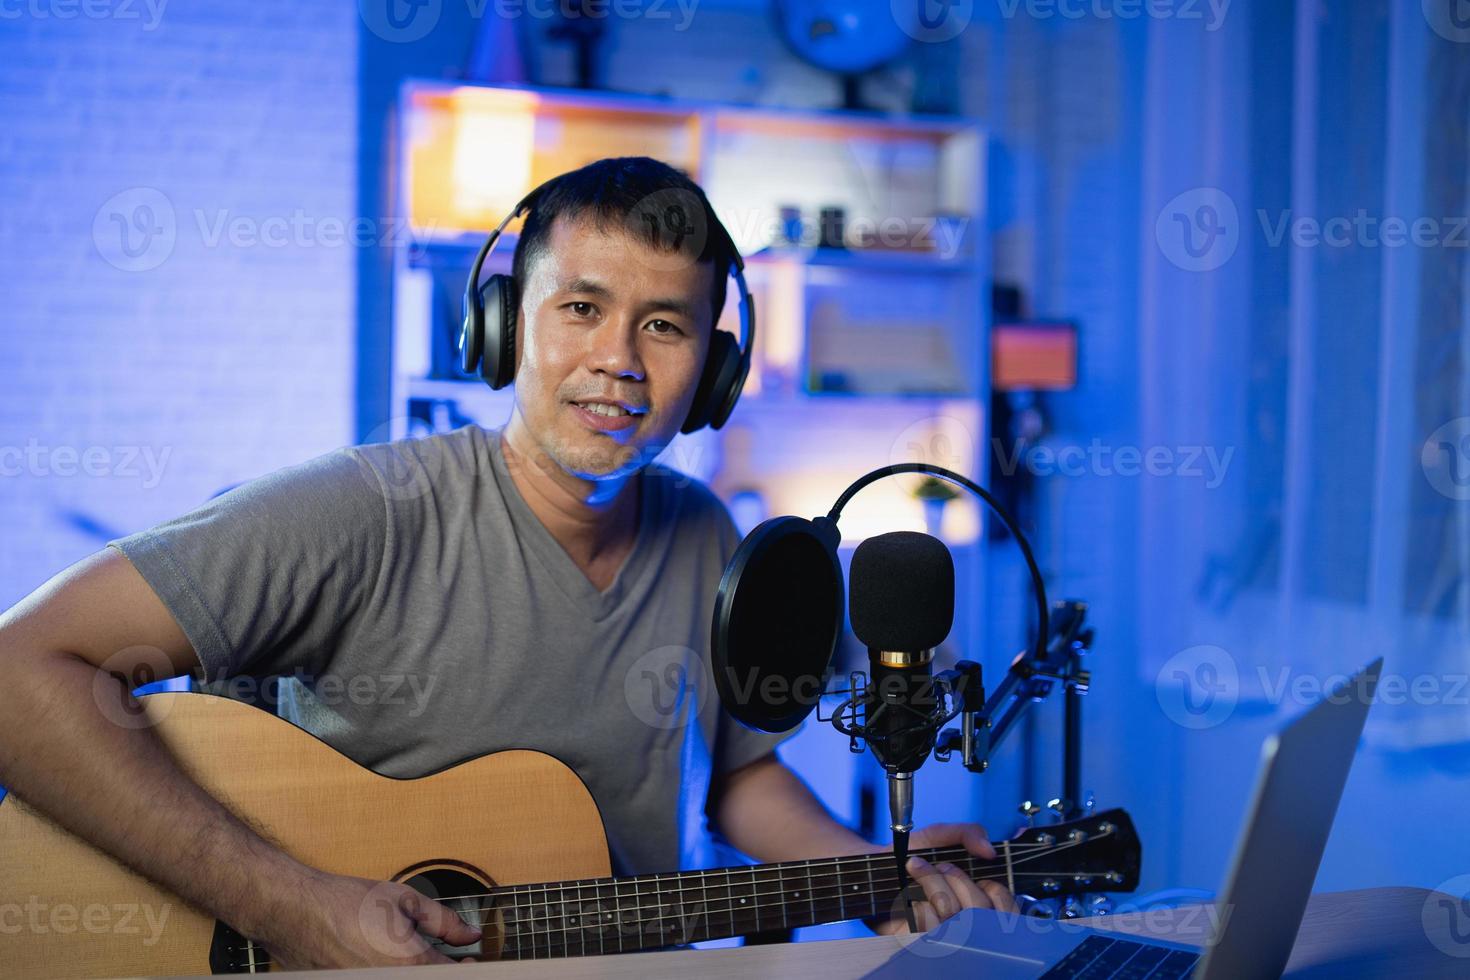 aziatische man youtuber live streaming performance gitaar spelen en een lied zingen. aziatische man die gitaar lesgeeft en online zingt. muzikant die muziek opneemt met laptop en akoestische gitaar speelt. foto